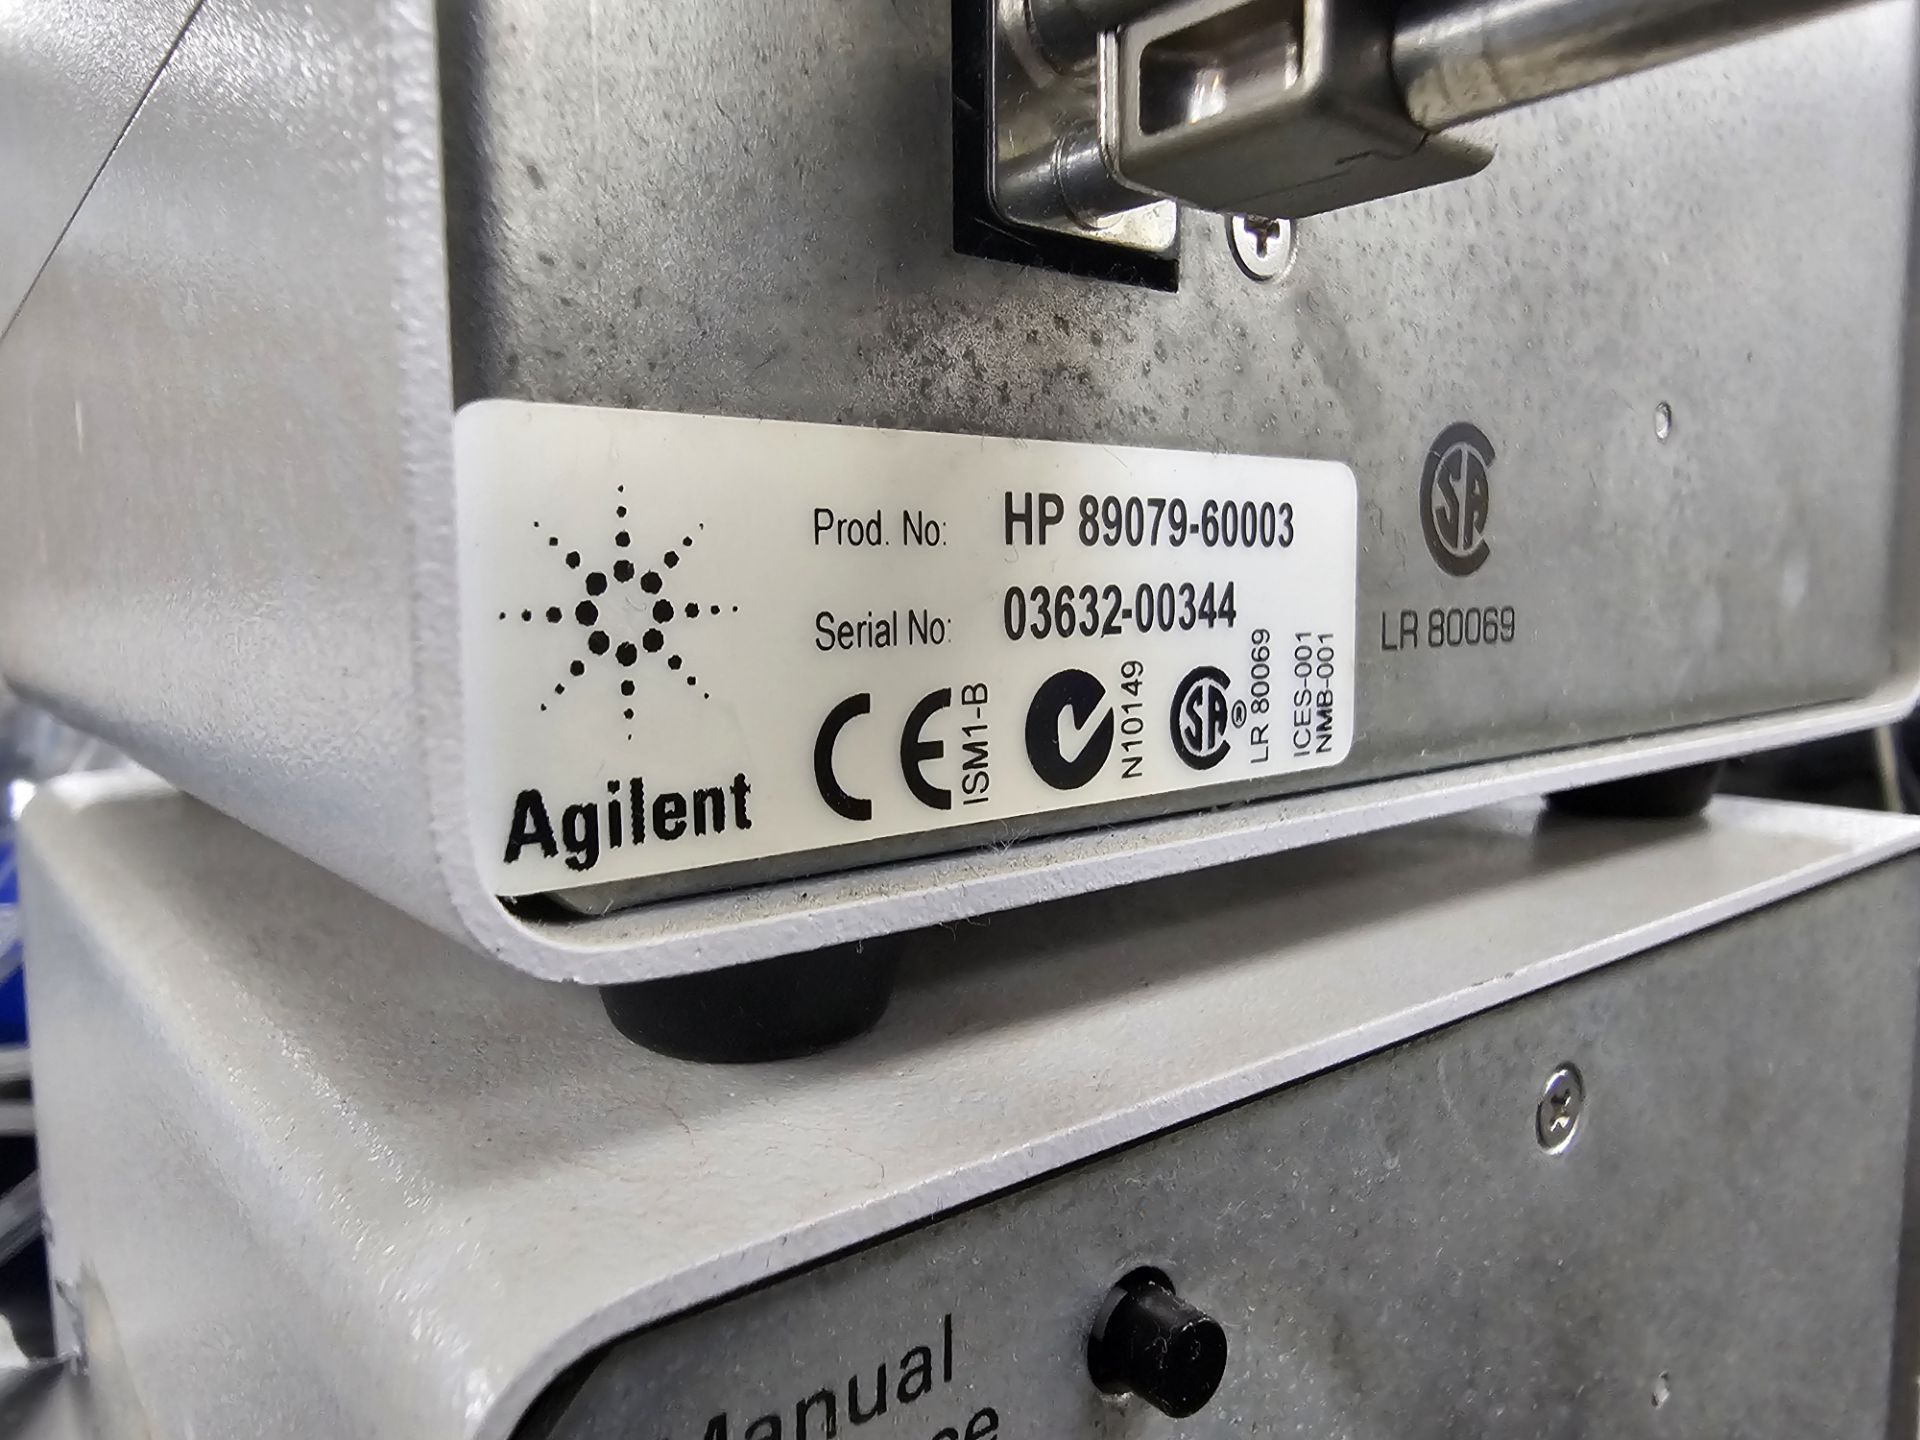 Agilent Model HP89078E0 Valve Pump Controller With (2) HP89079-60003 Valve Pumps - Bild 5 aus 6